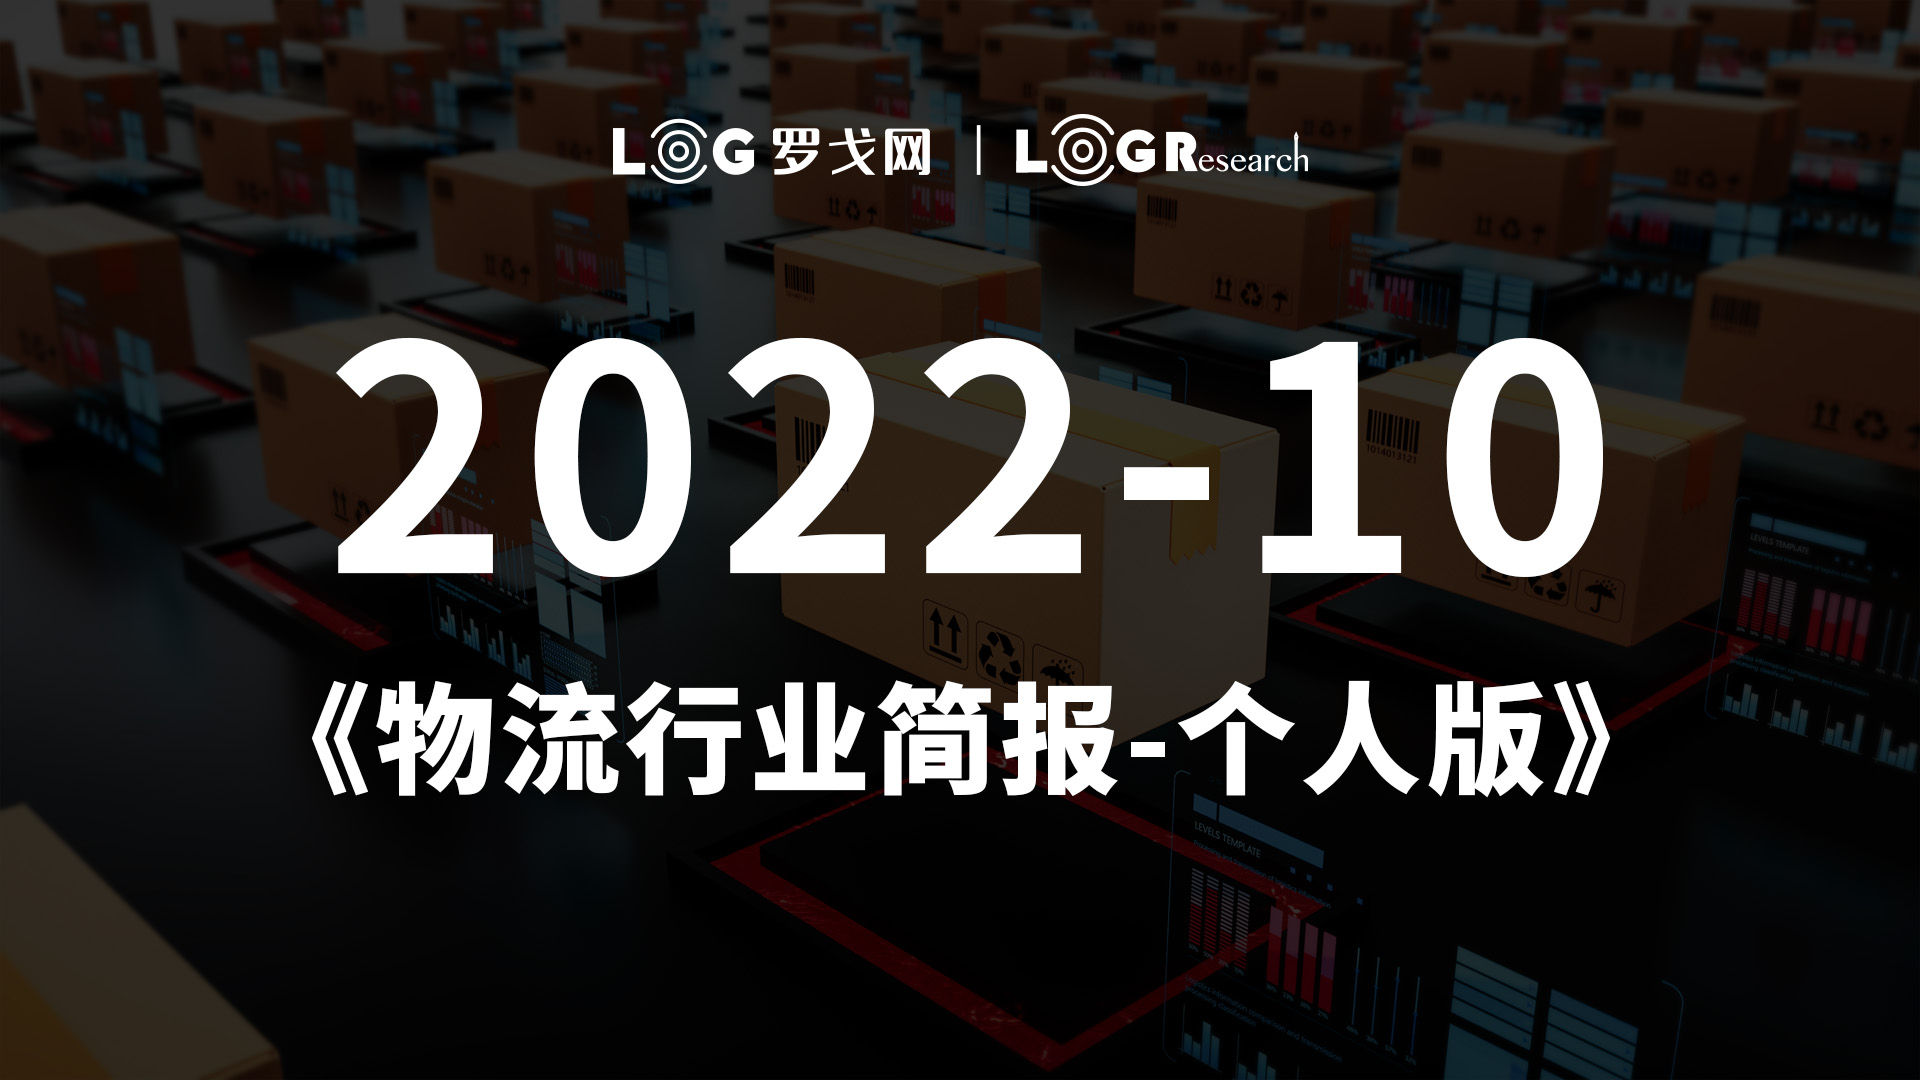 2022-10物流行业简报-个人版